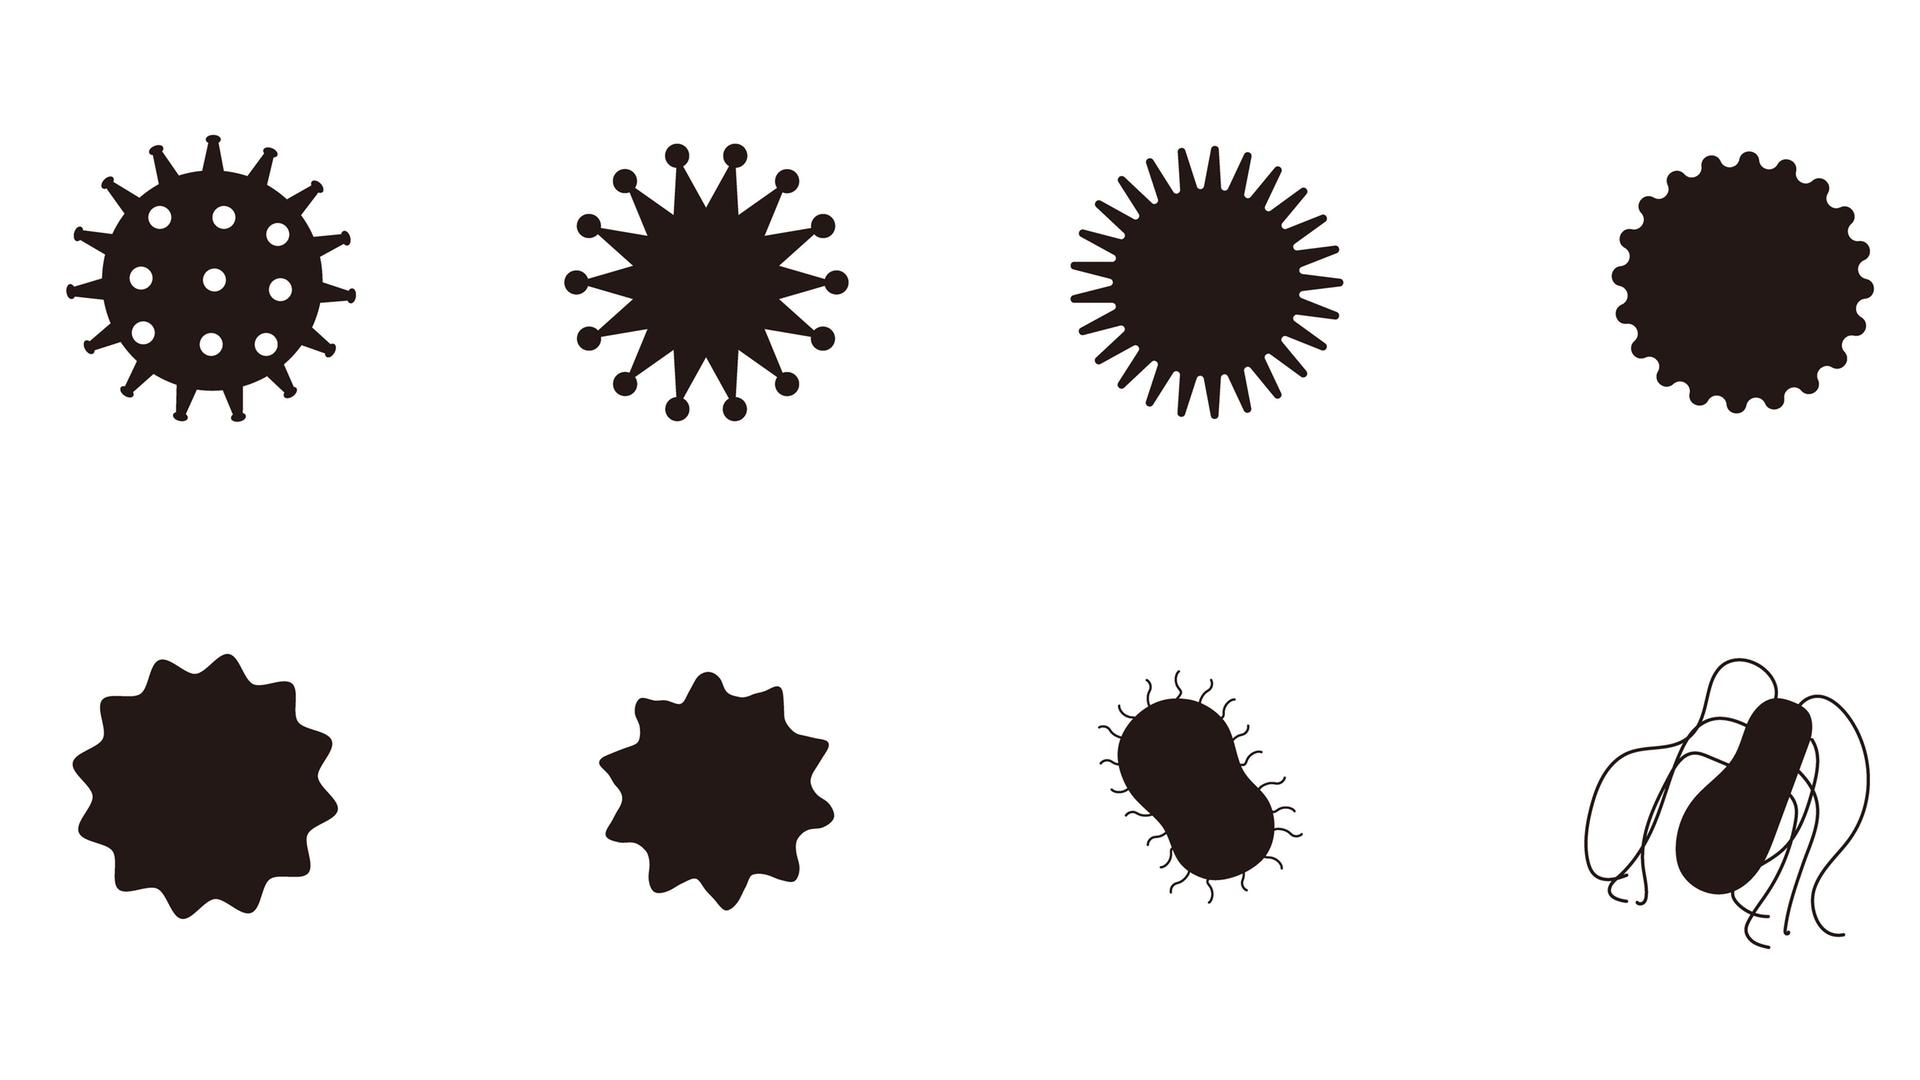 Eine Schwarz-Weiß-Illustration zeigt unterschiedliche Variationen der Umrisse von Viren.